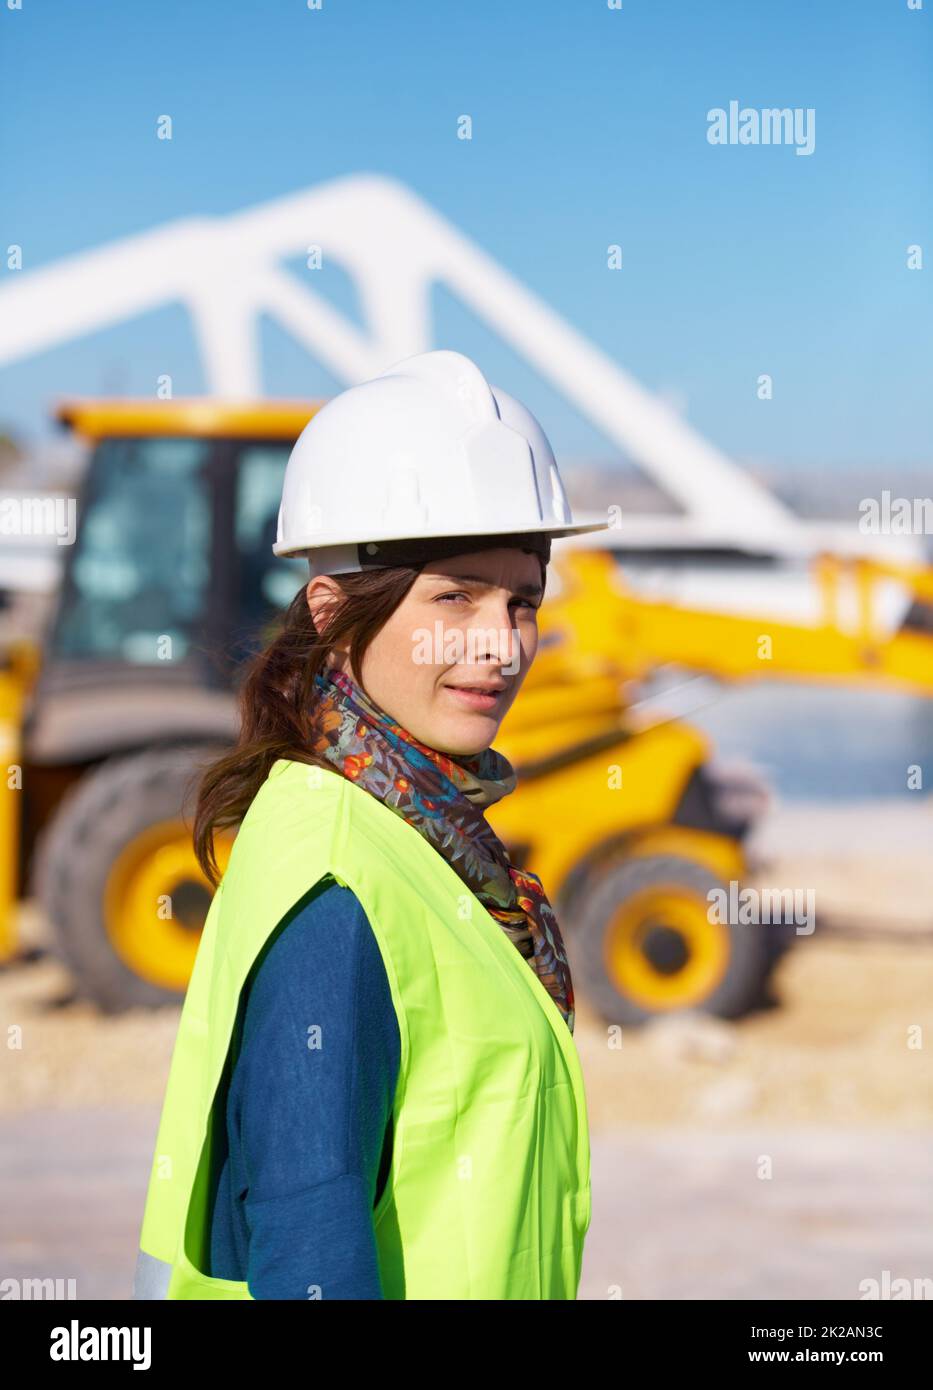 Im il foreWOMAN. Ritratto di un giovane e attraente lavoratore di costruzione in loco. Foto Stock